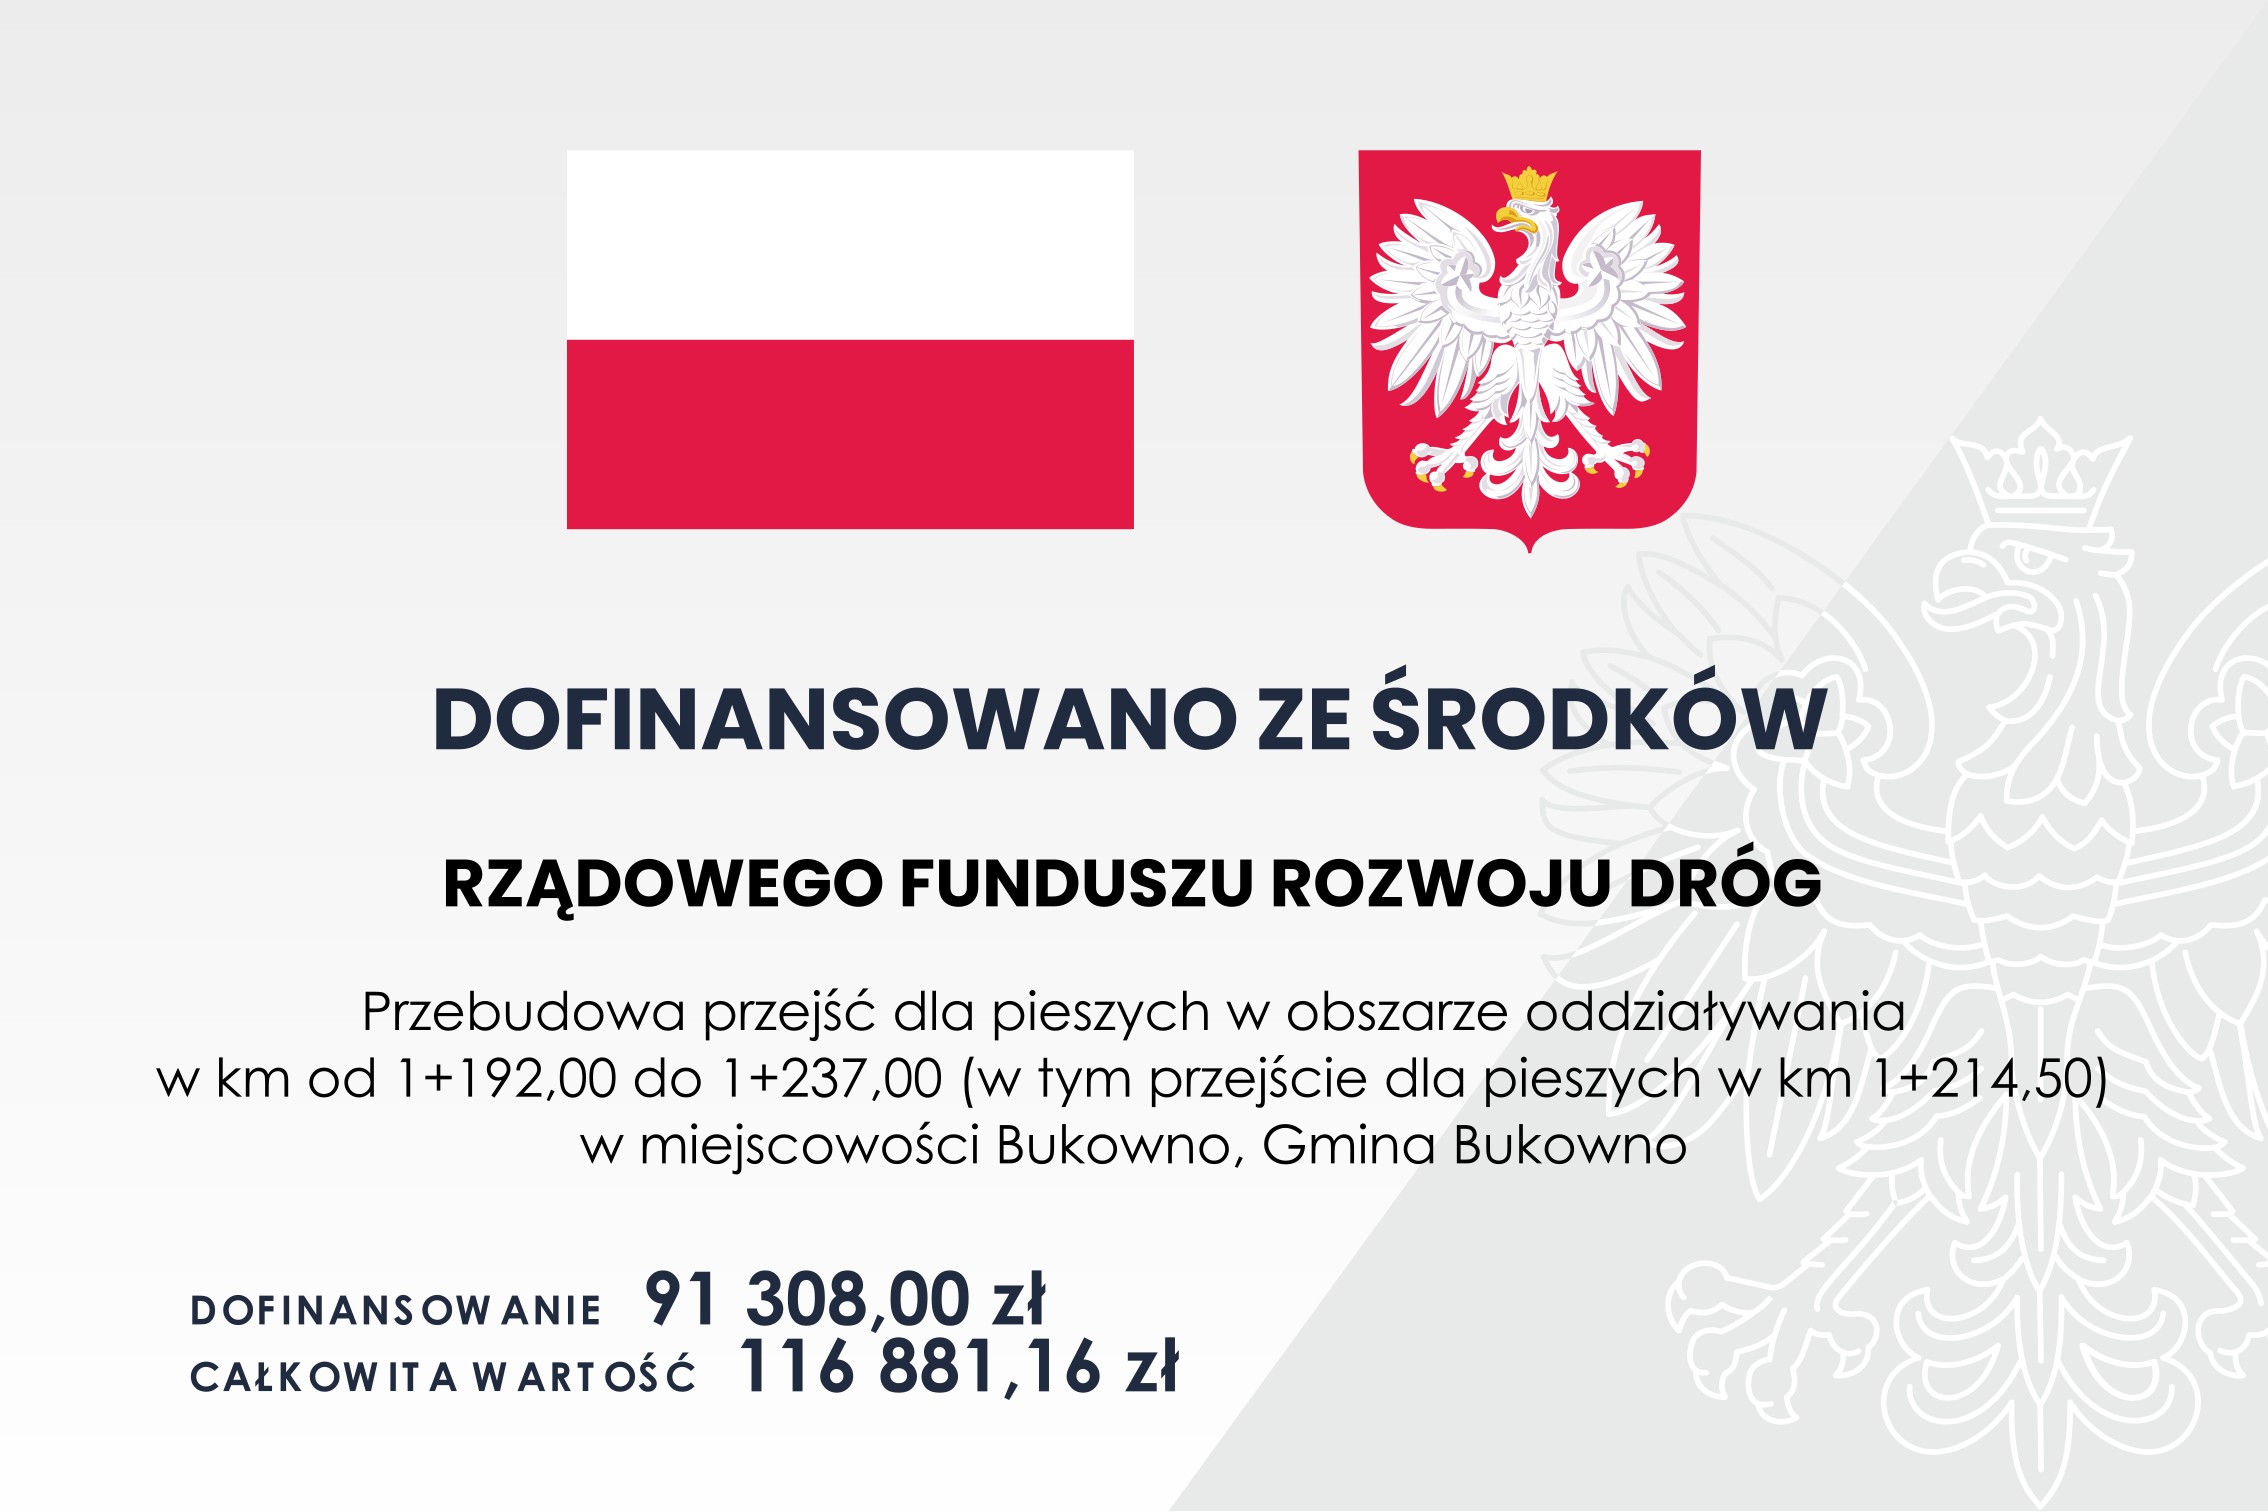 Przebudowa przejścia dla pieszych w obszarze oddziaływania w km od 1+192,00 do 1+237,00 (w tym przejście dla pieszych w km 1+214,50) w miejscowości Bukowno, Gmina Bukowno.